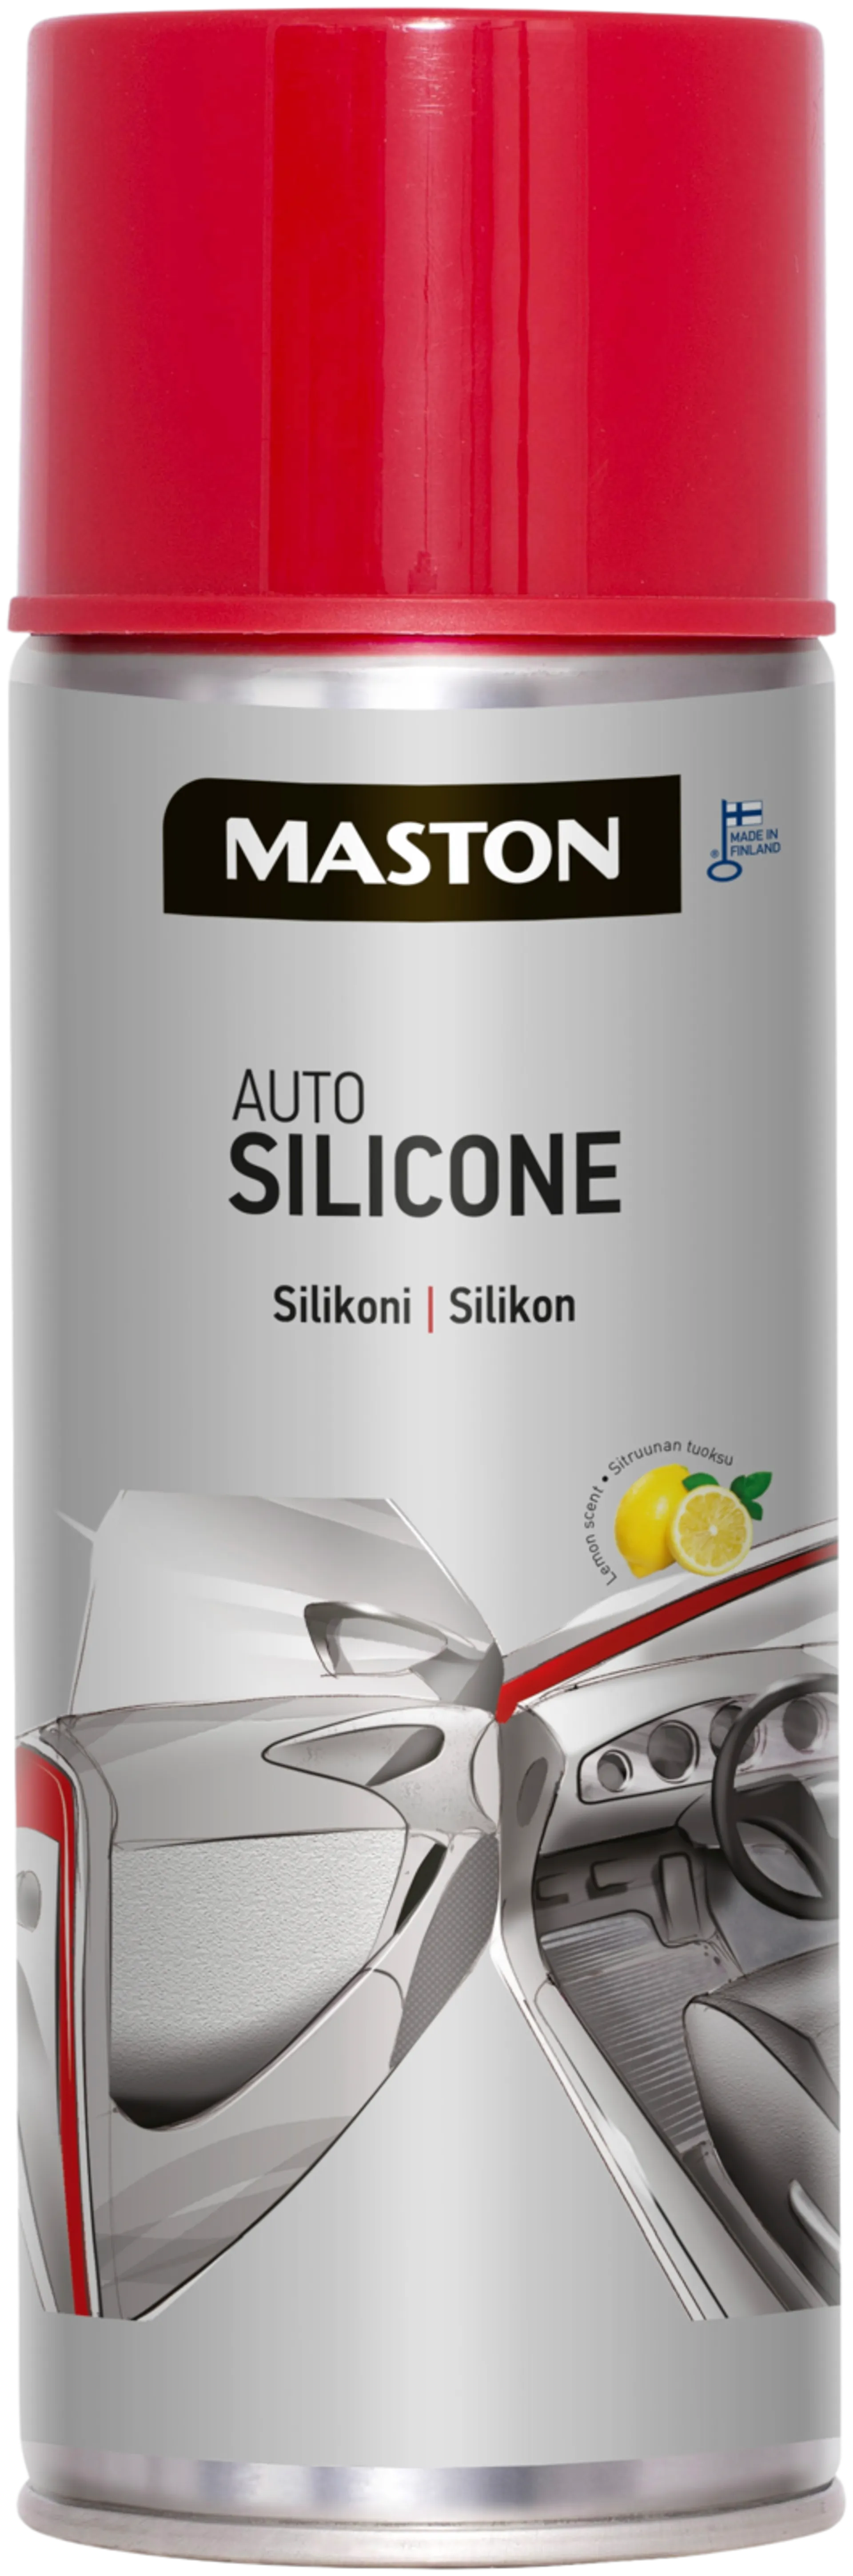 Maston Silikoni spray auto 400ml